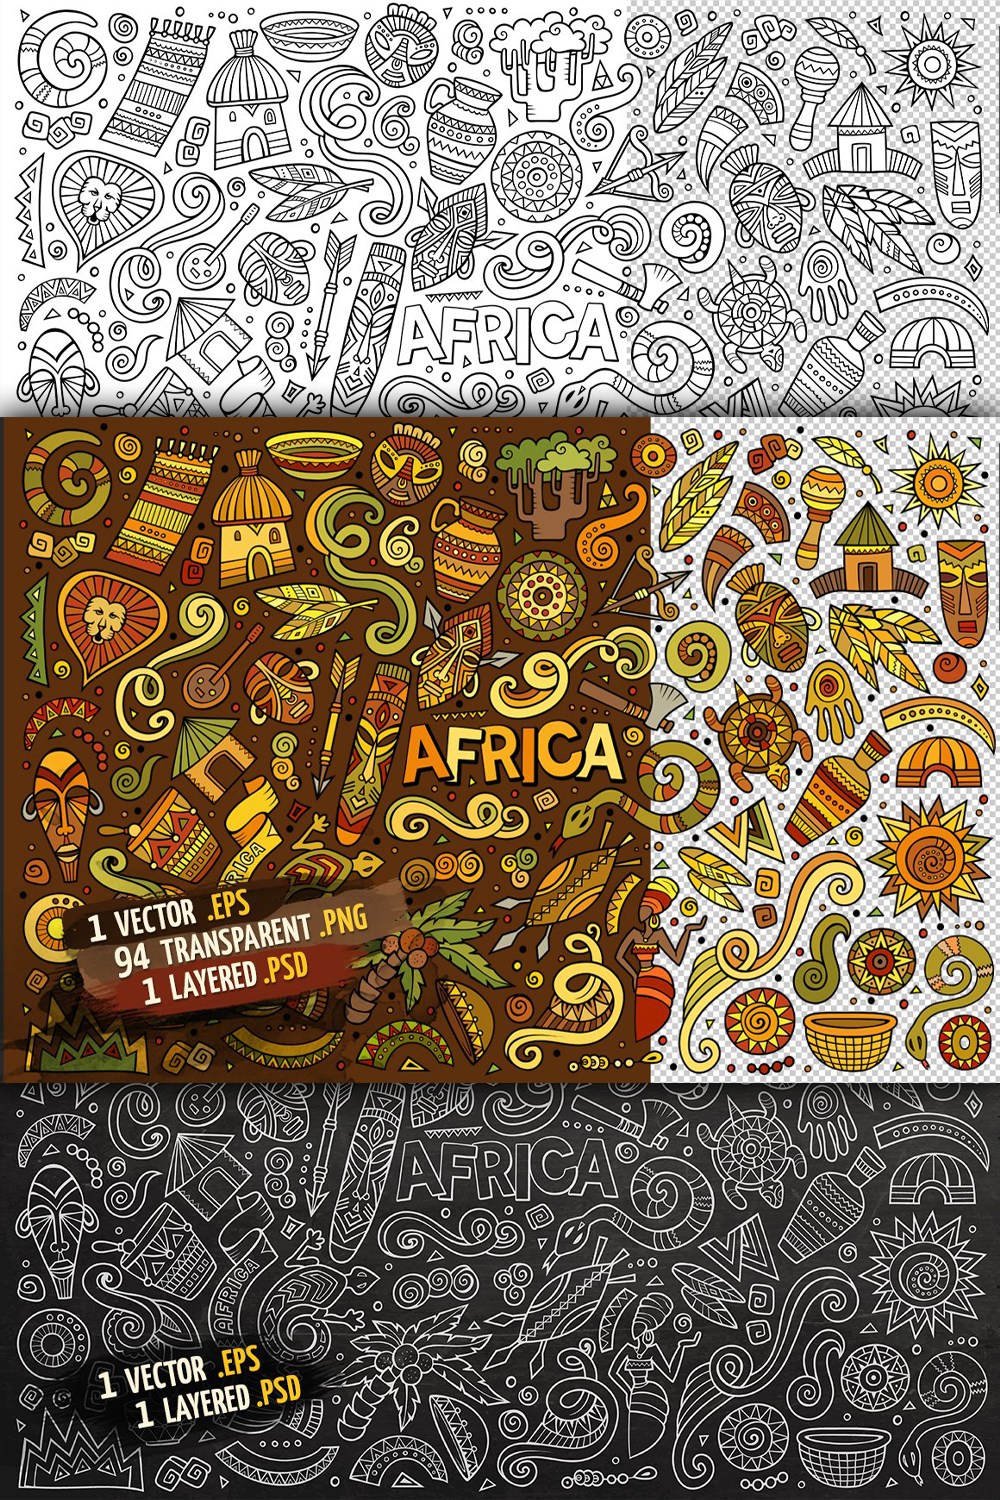 Africa objects elements set pinterest.